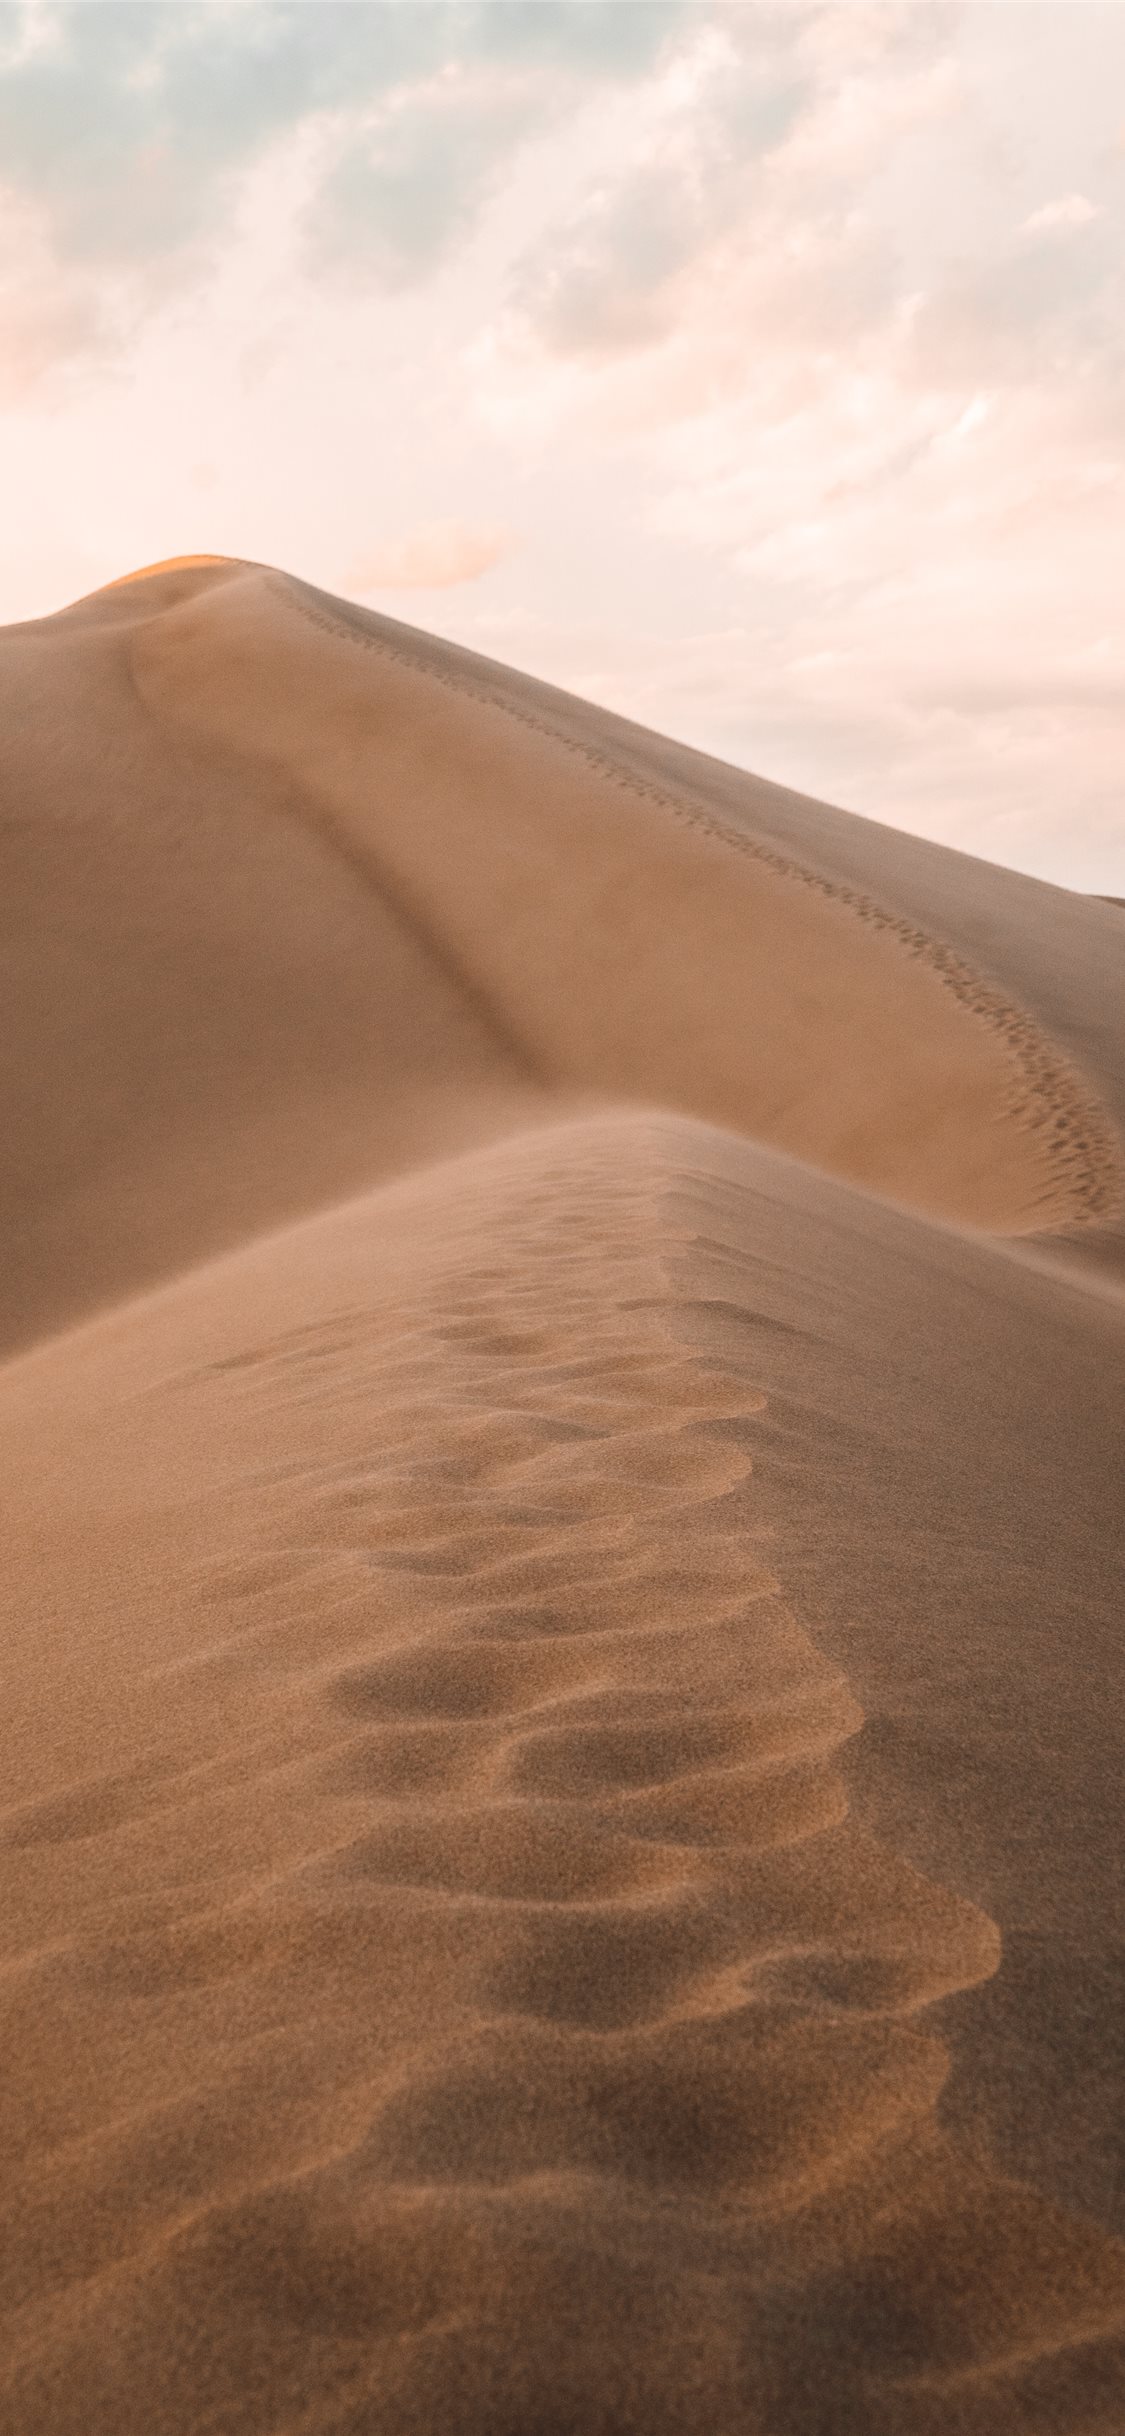 Sand dunes in Desert 4K Wallpapers | HD Wallpapers | ID #28431